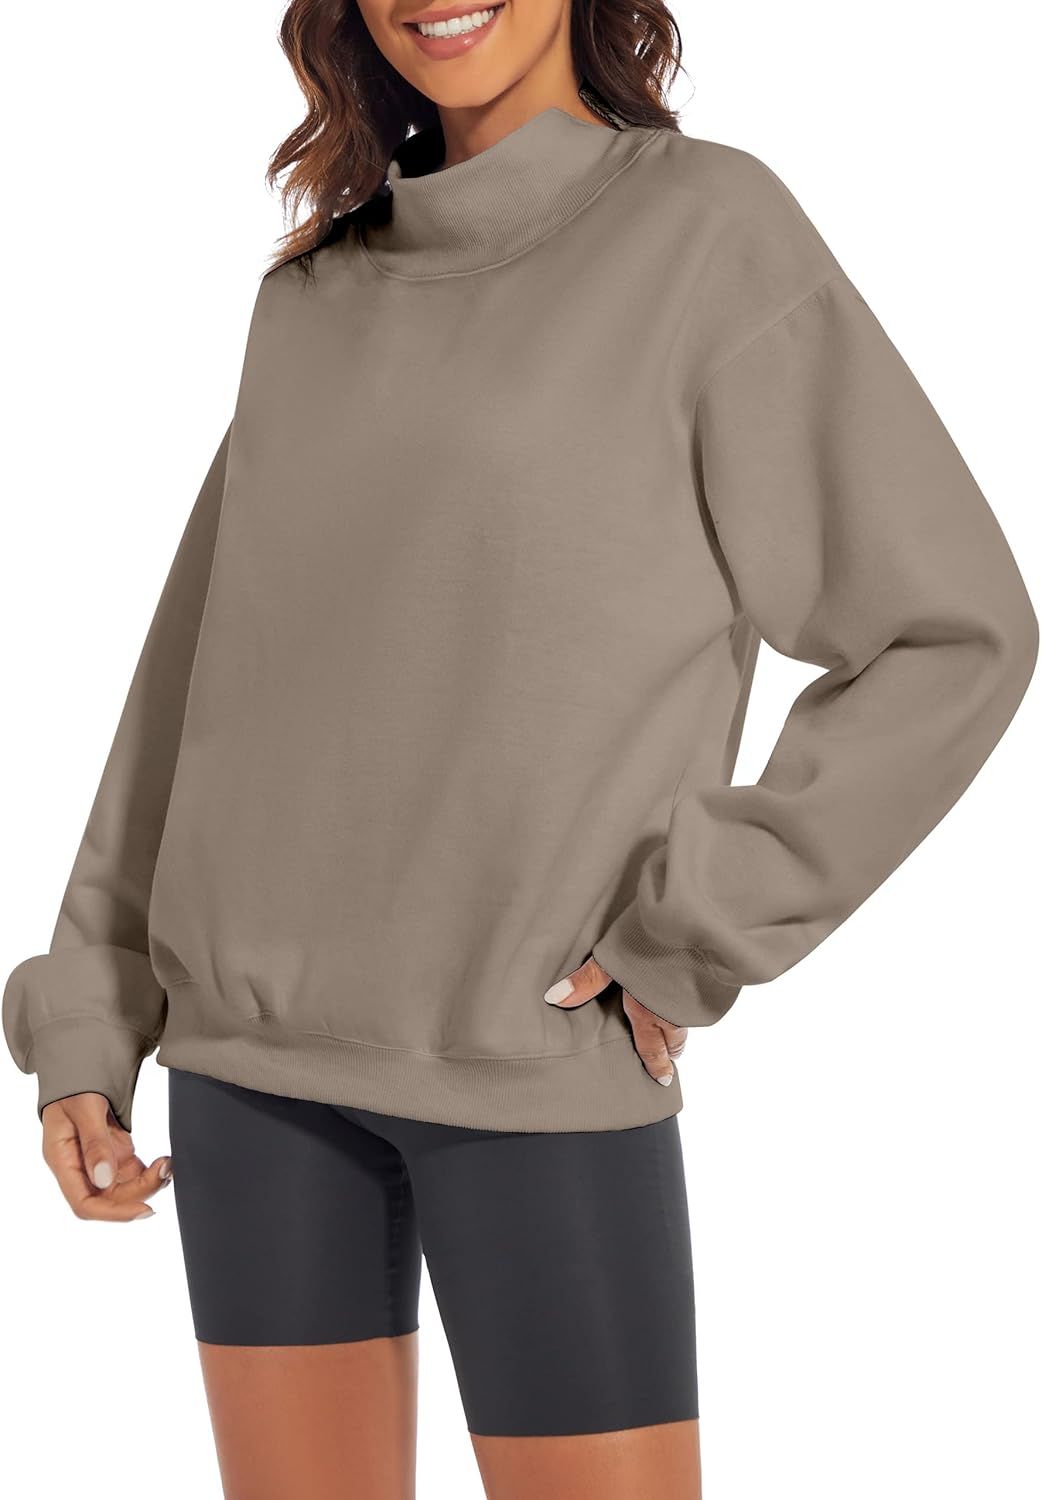 MISSACTIVER Women’s Oversized Turtle Neck Sweatshirt Fleece Long Sleeve Drop Shoulder Collar So... | Amazon (US)